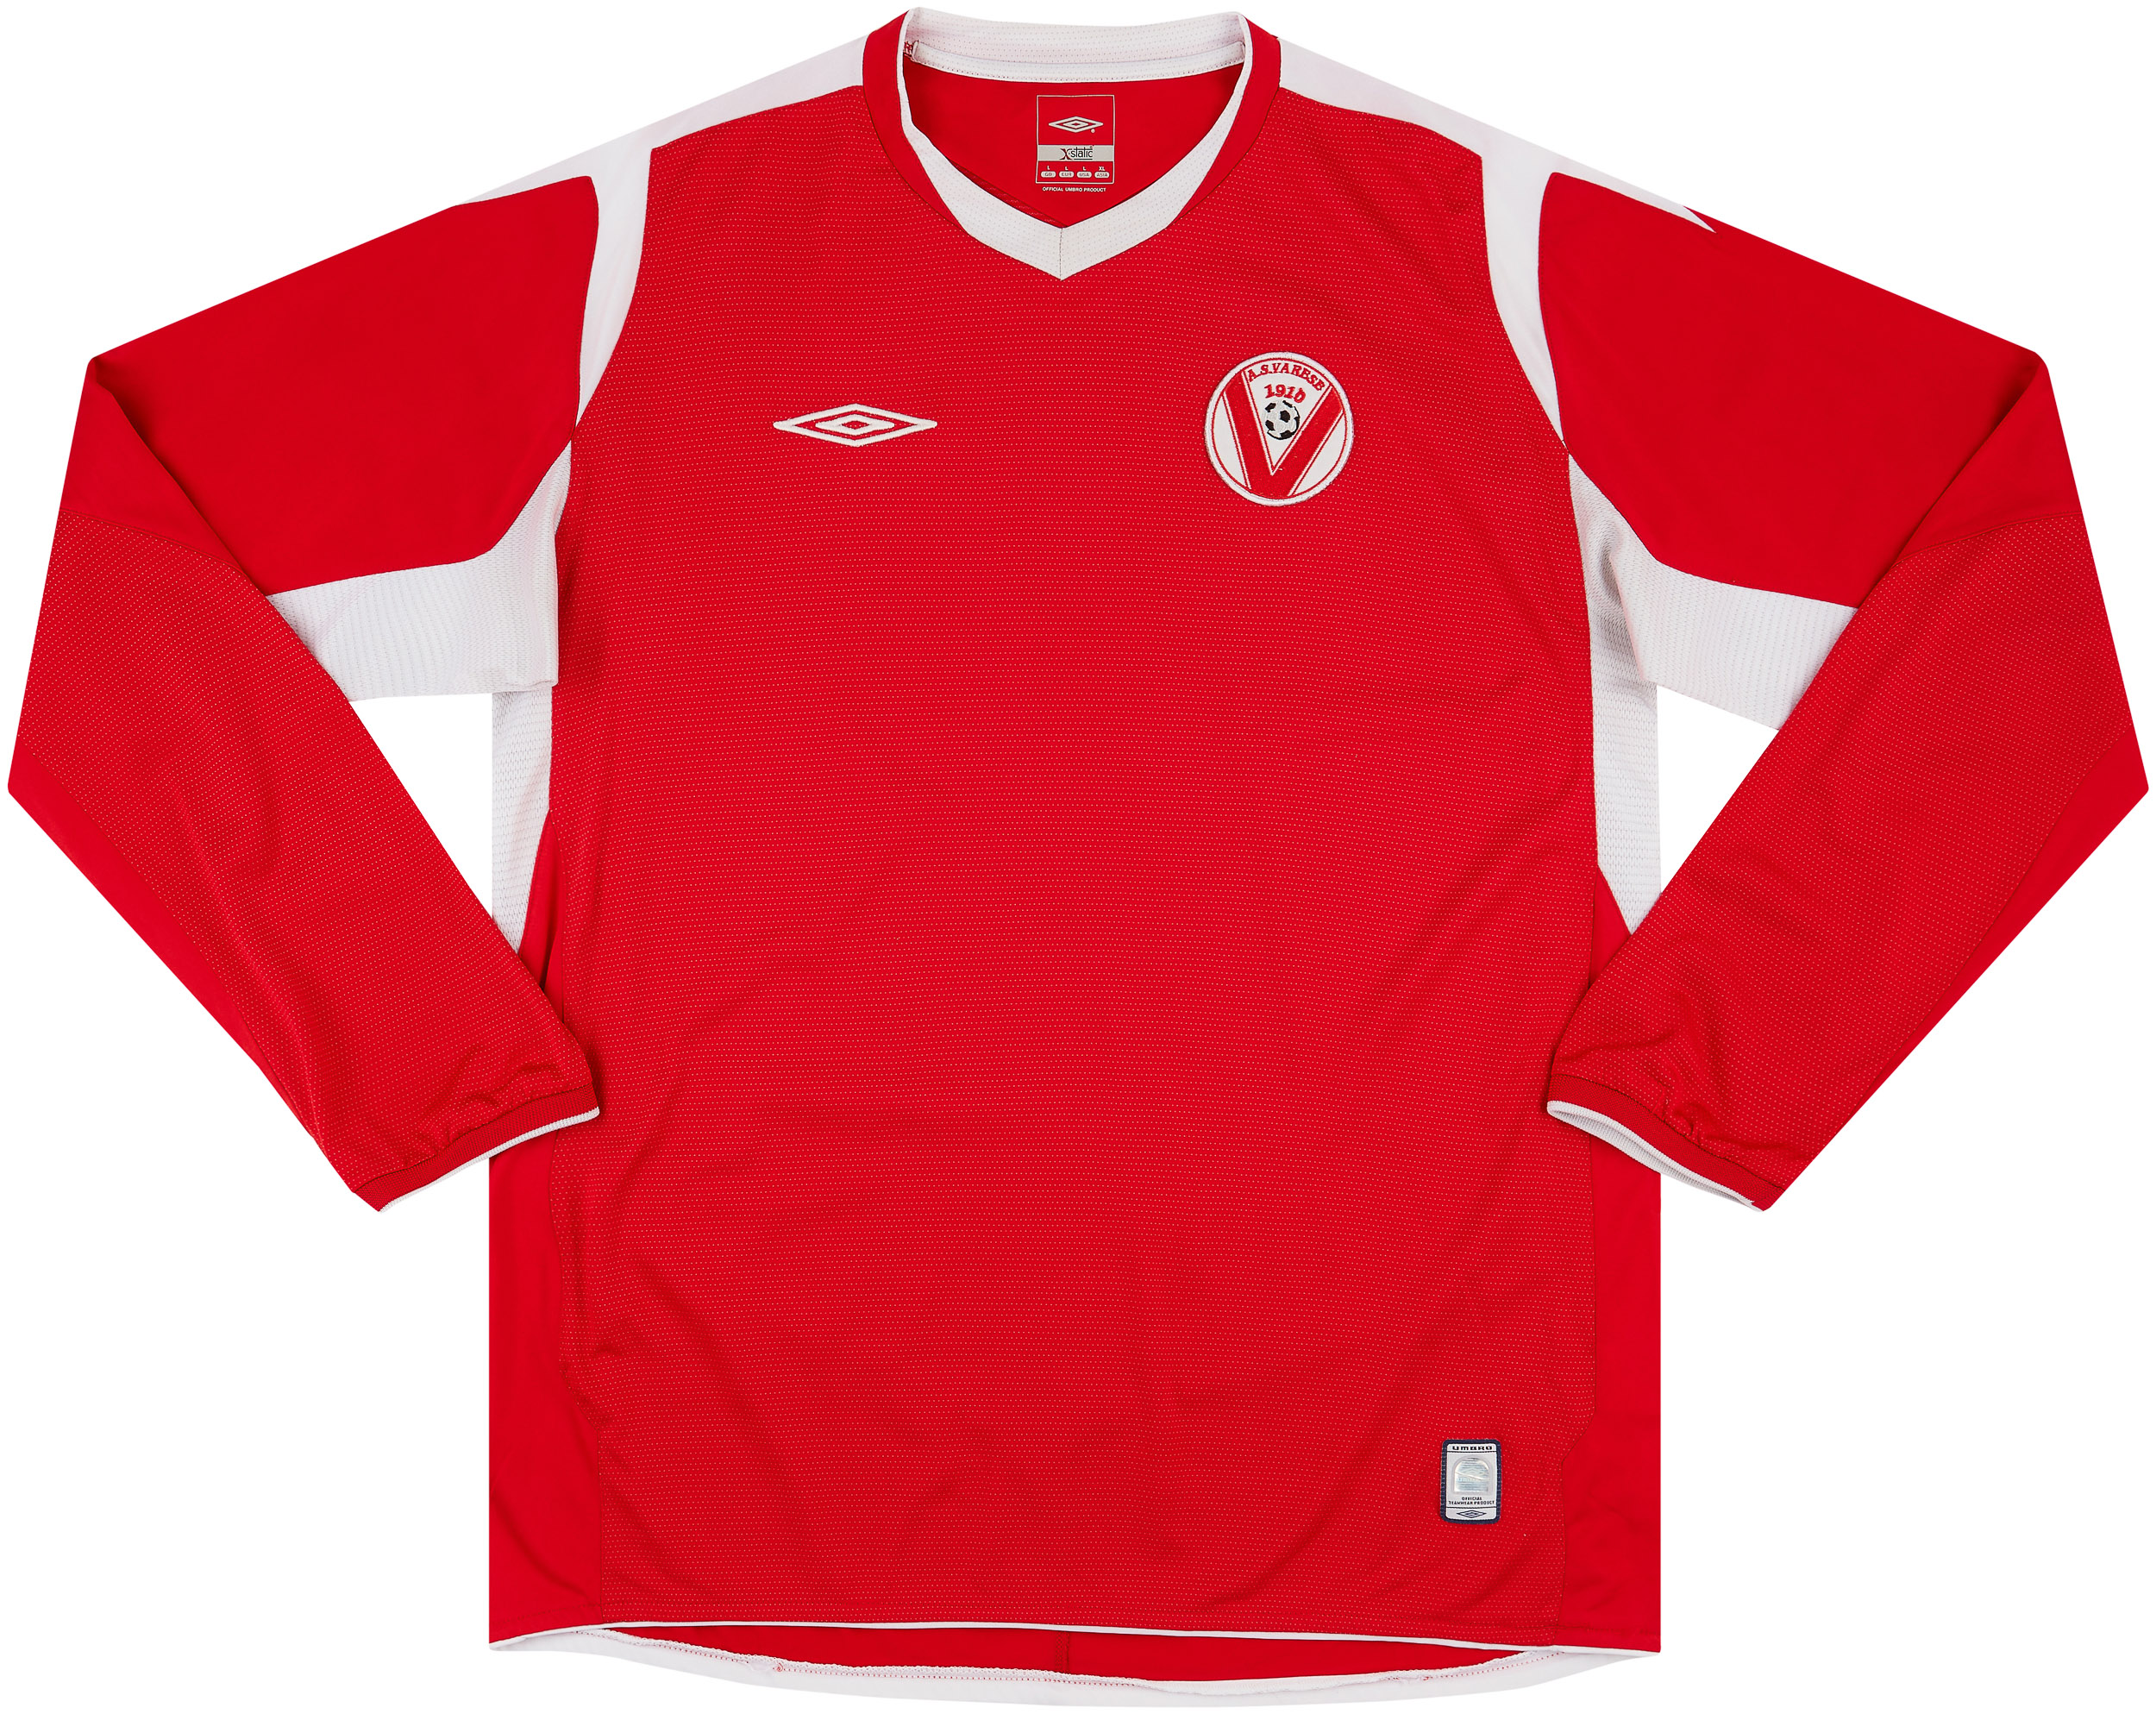 2000s Varese Home Shirt - 9/10 - ()